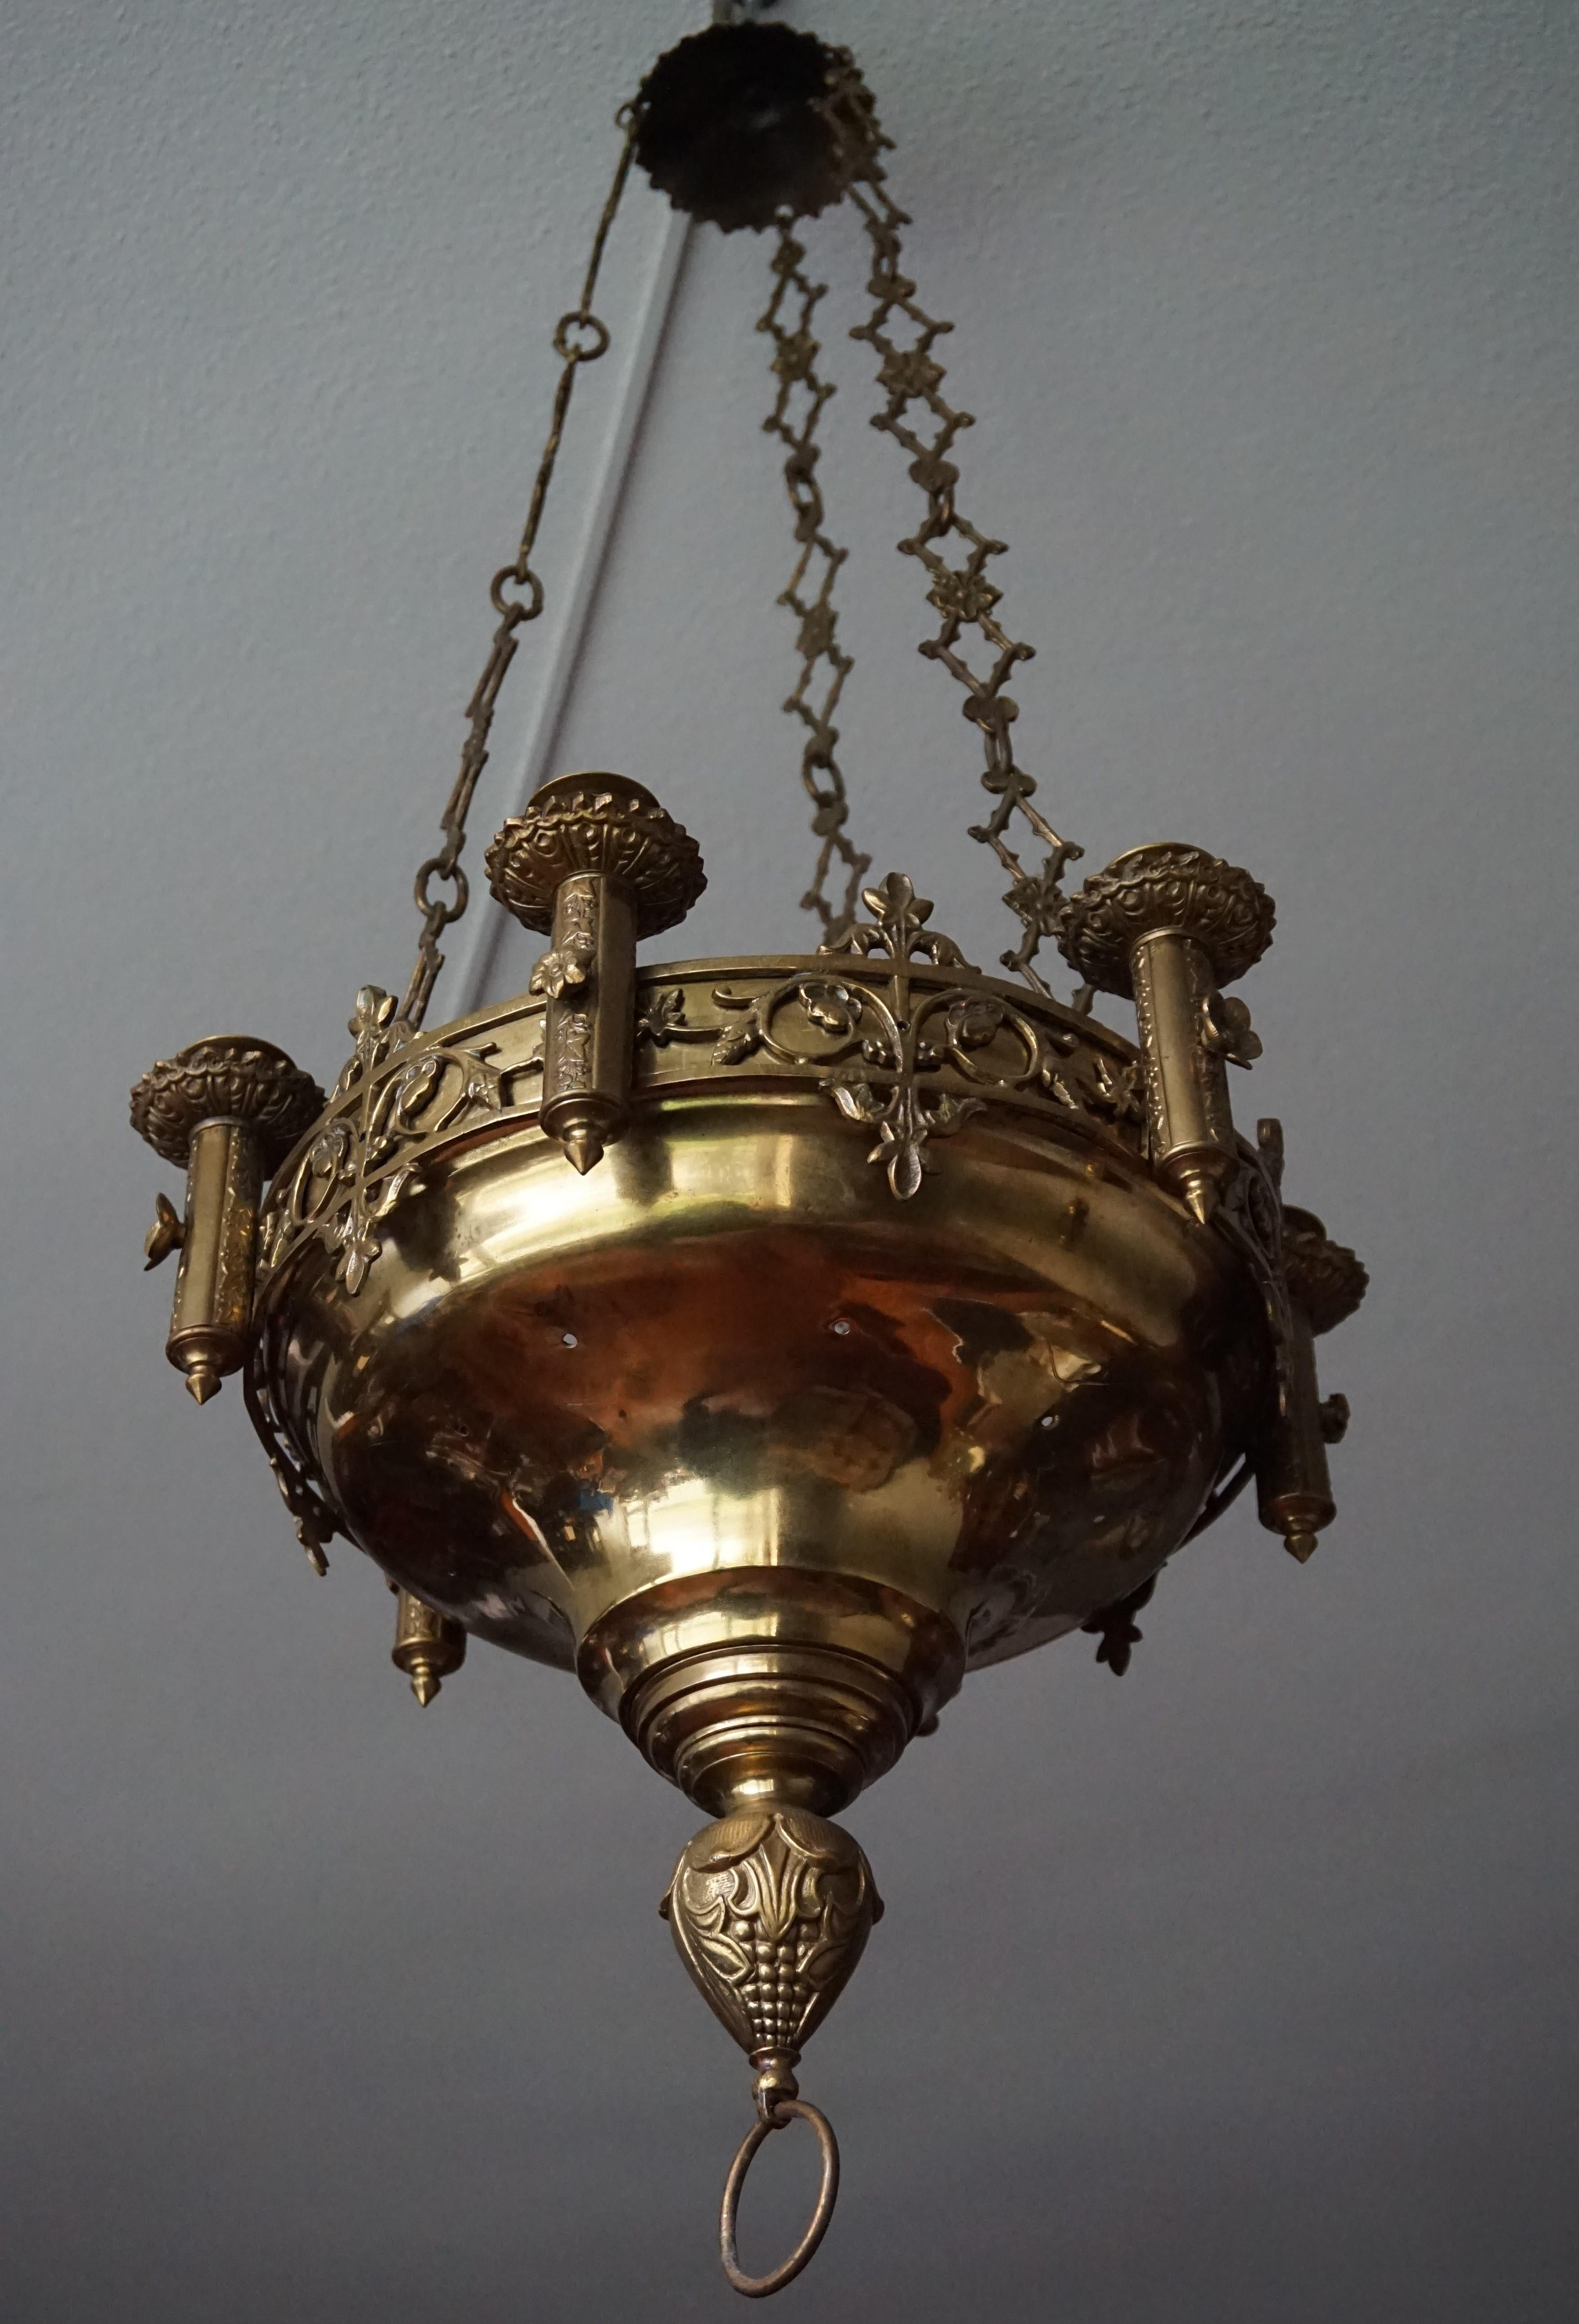 gothic church chandeliers